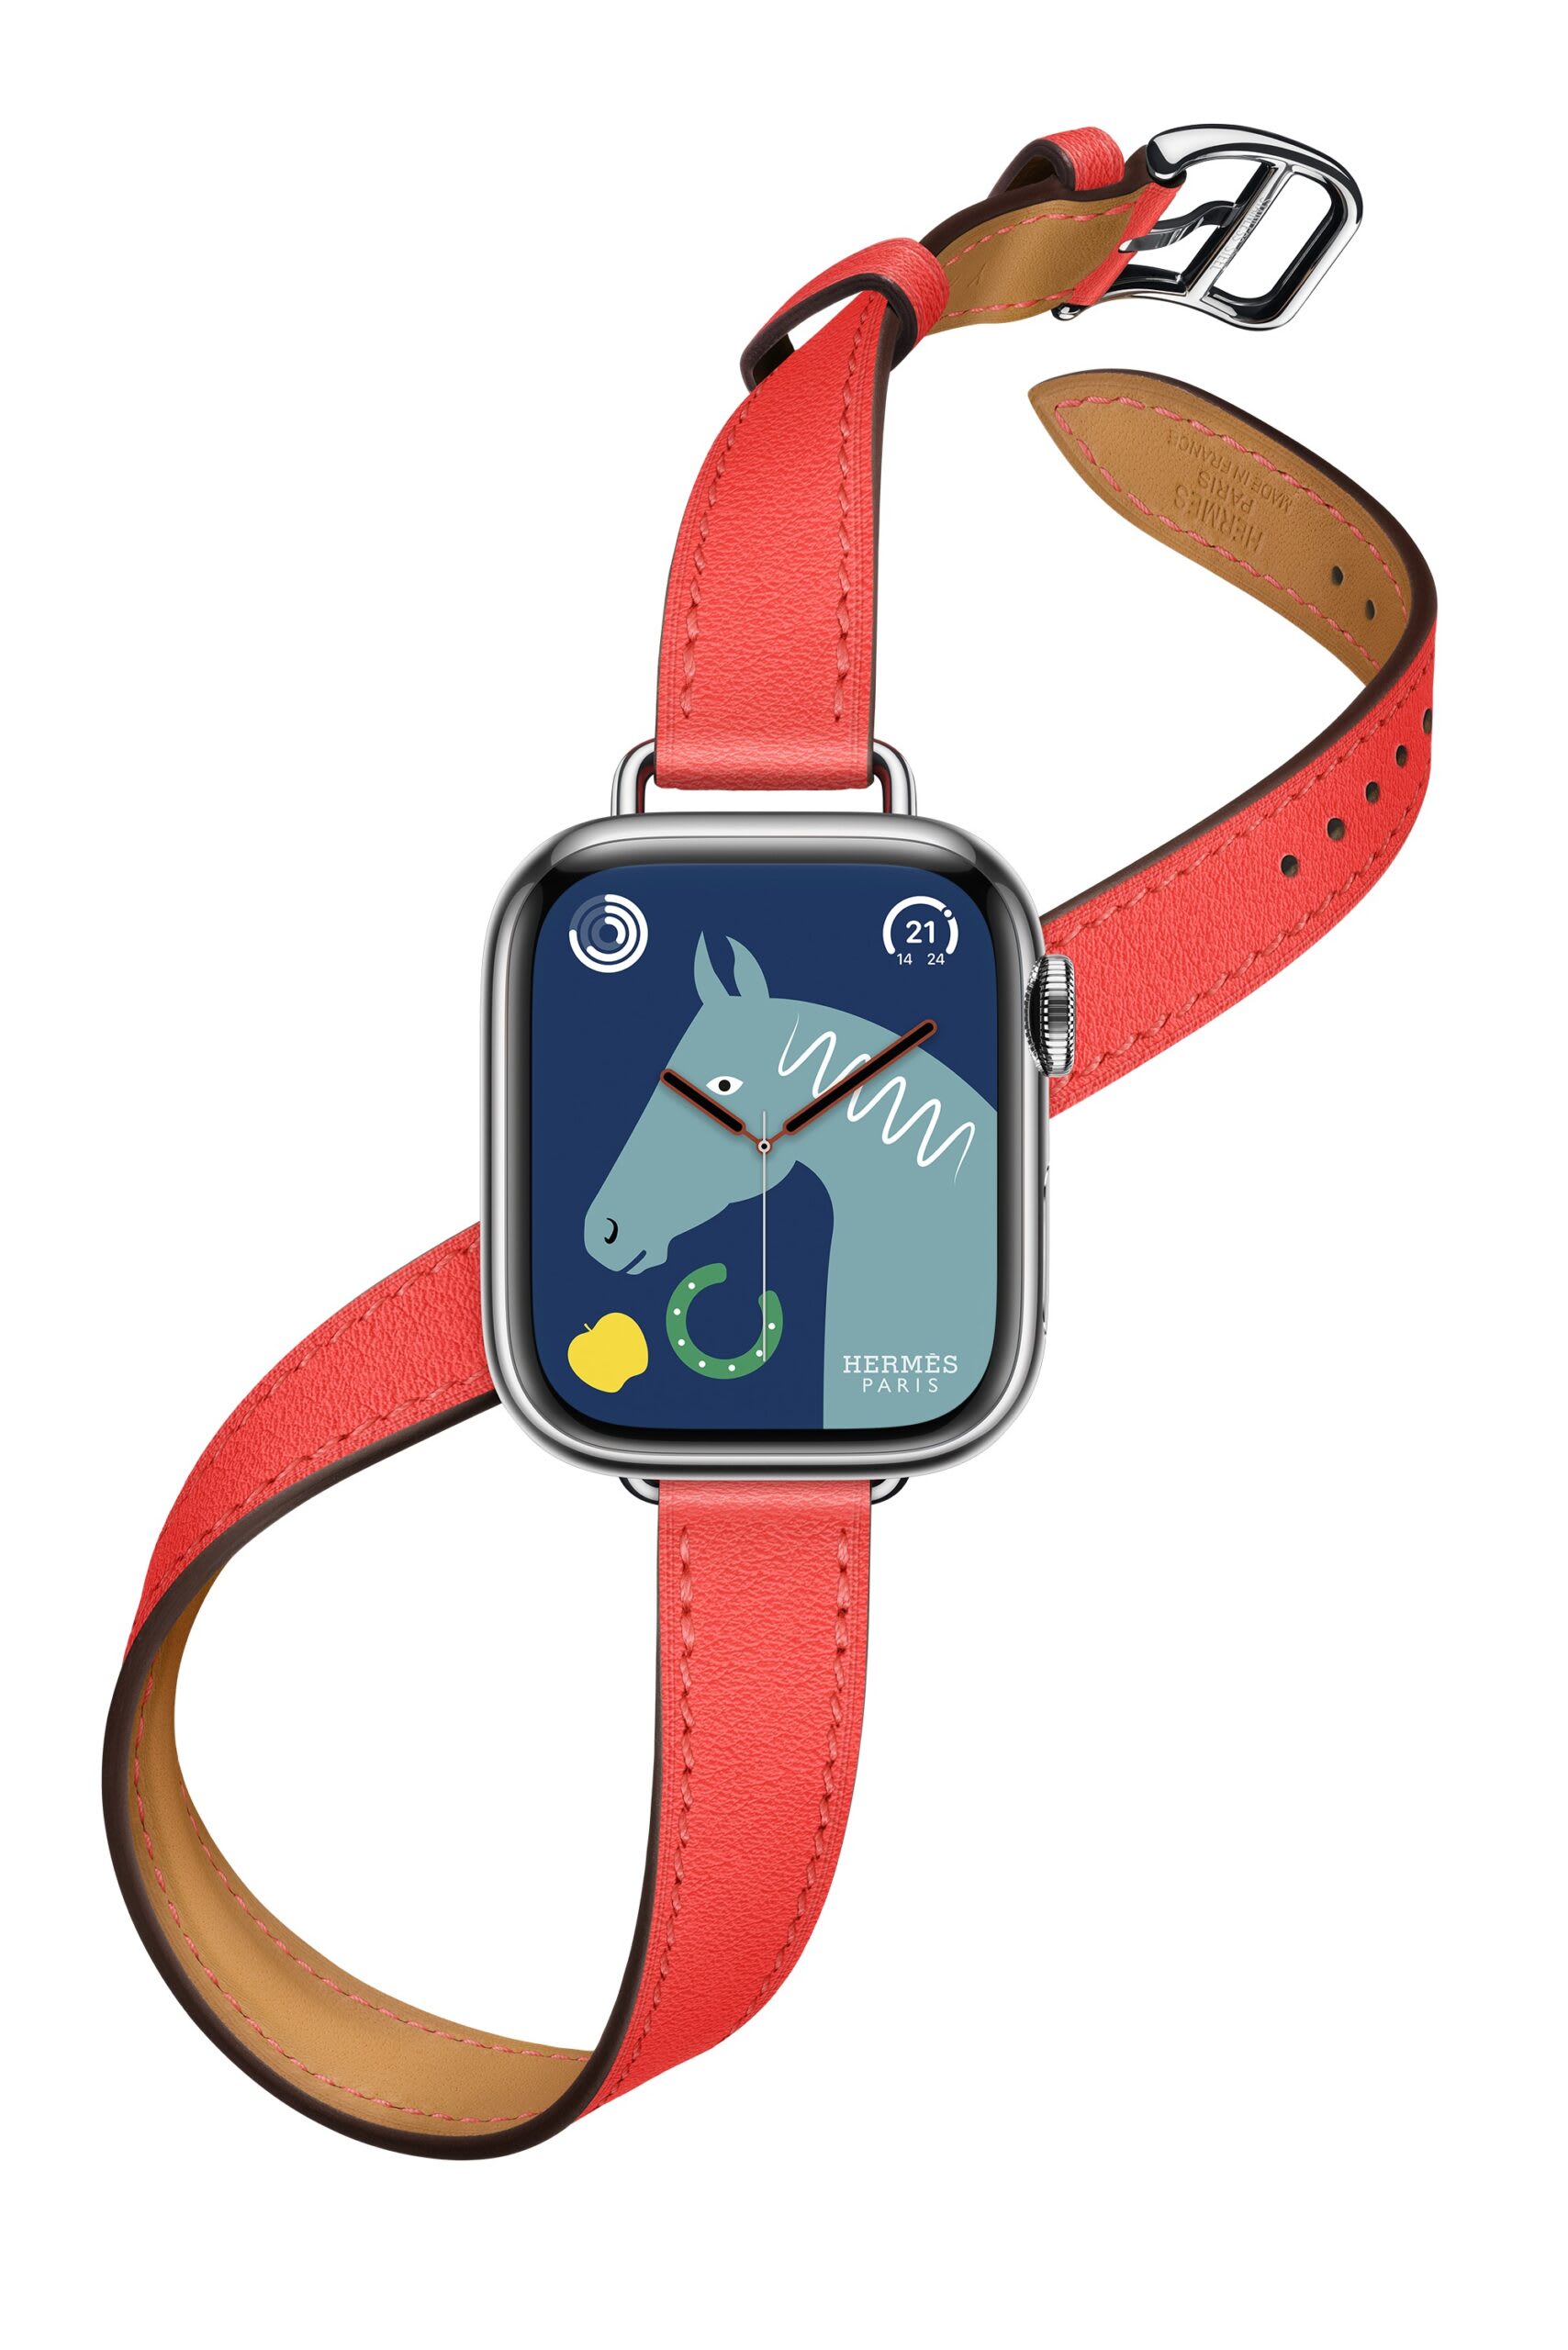 #986 apple watch専用 エルメス ドゥブルトゥール ローズテキサス